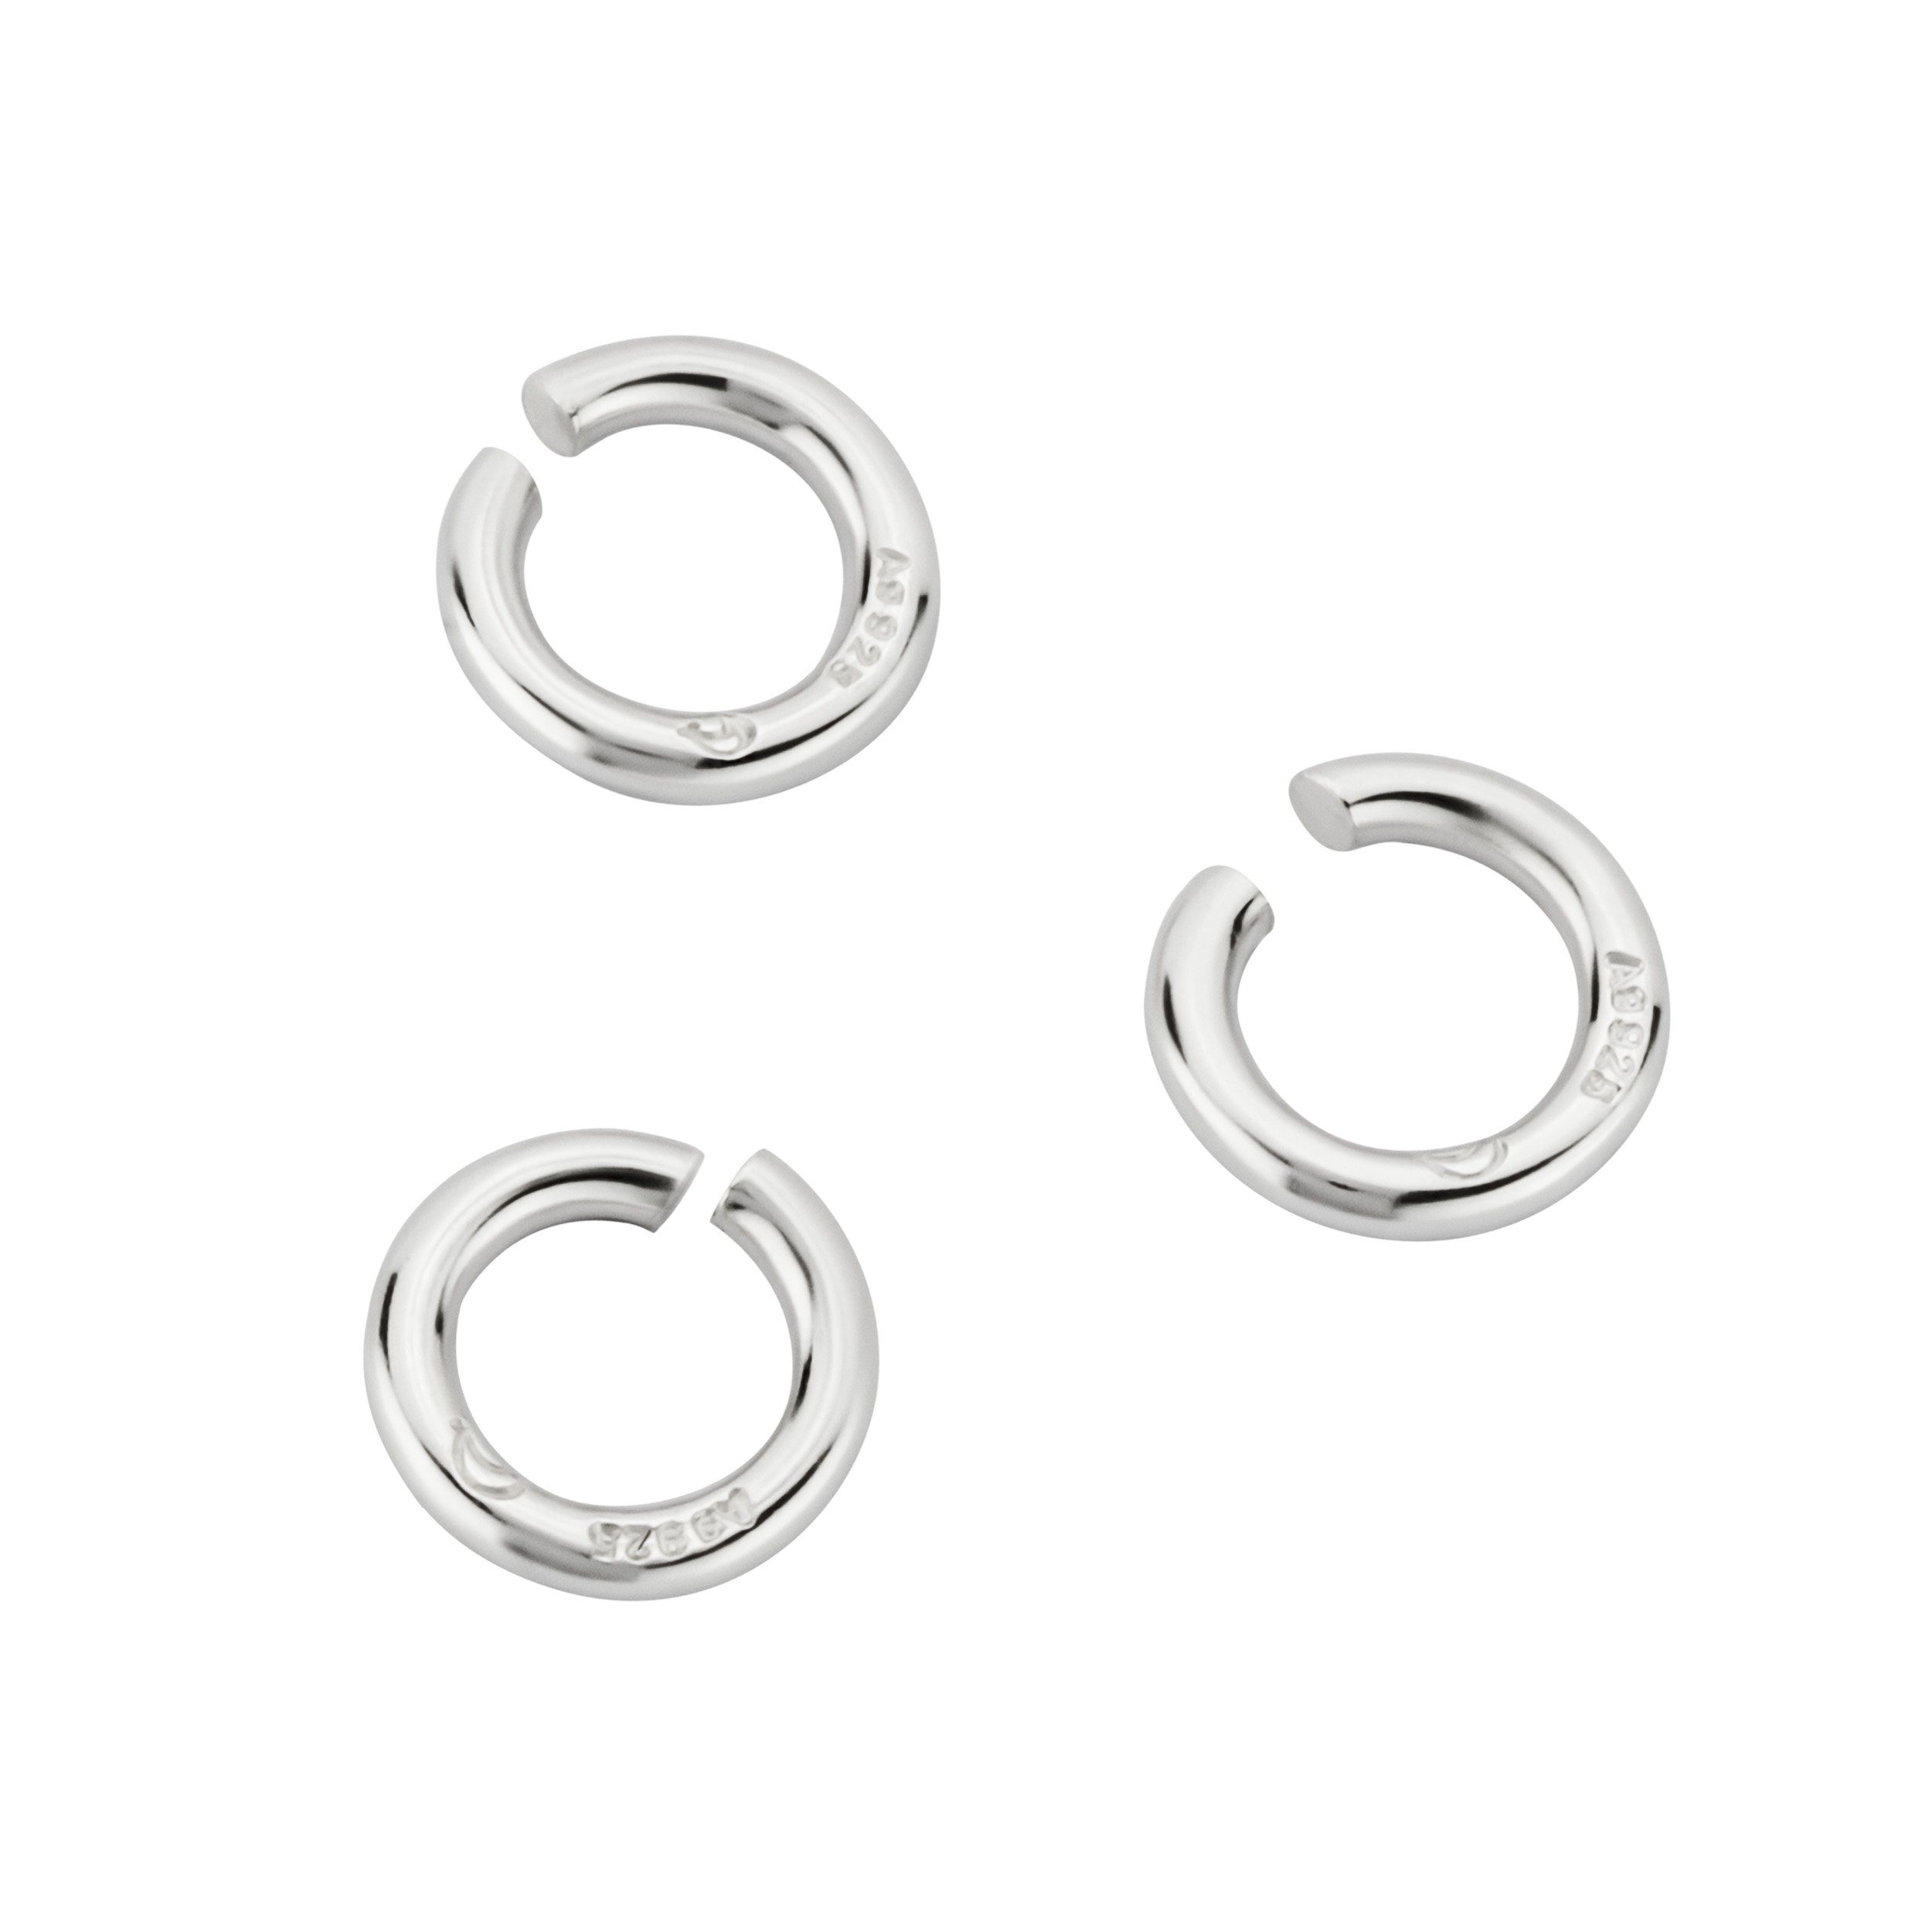 NKlaus Verschlussklammer 3x Öse 925 Silber 3 Silberketten Lieferumfang: Ersat Stück Biegeringe Verbindungsringe 3,5mm